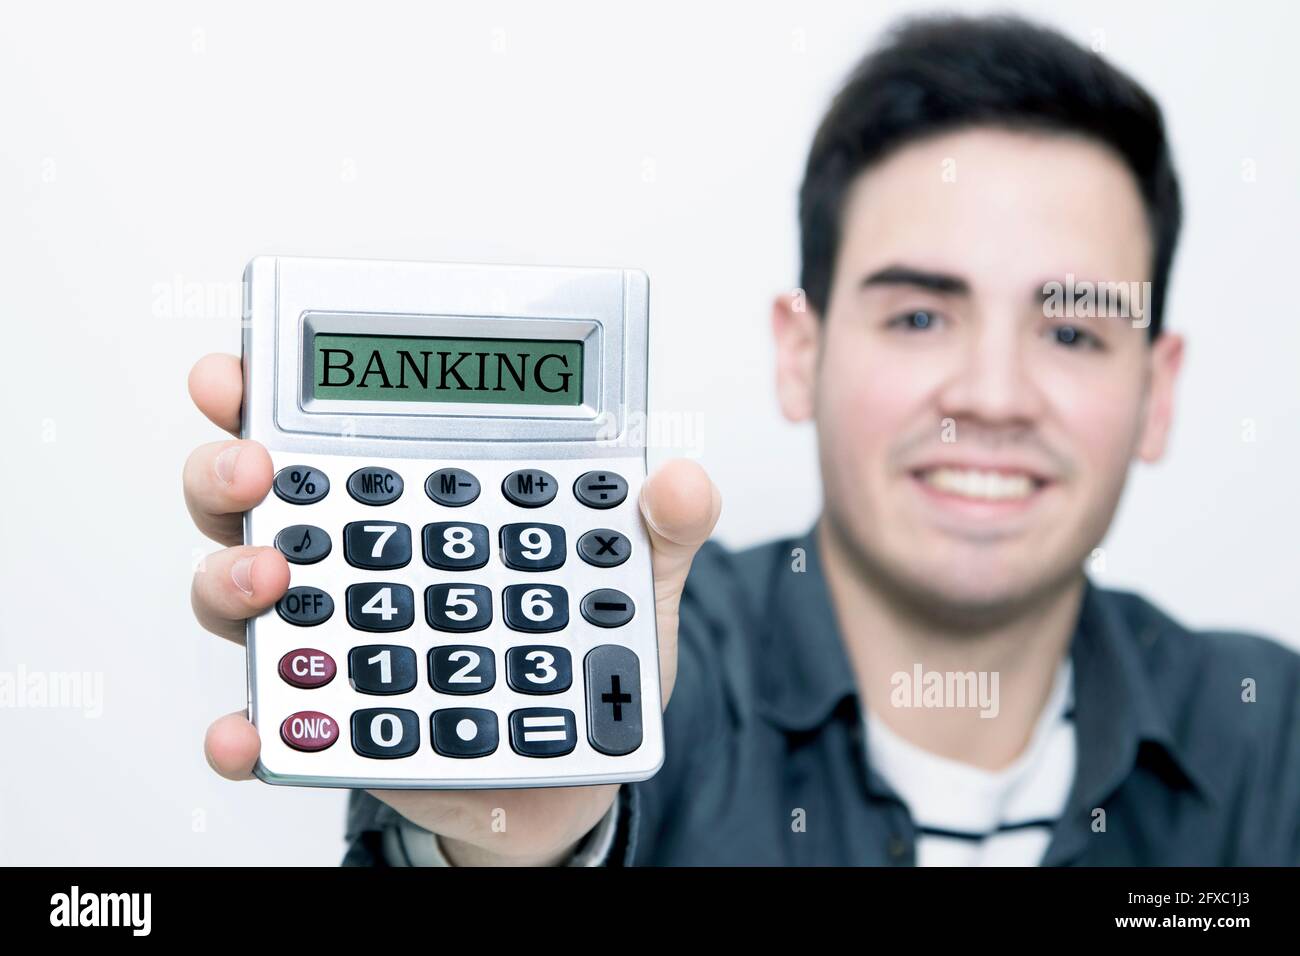 calculatrice dans le premier plan avec l'homme à l'arrière-plan souriant Banque D'Images